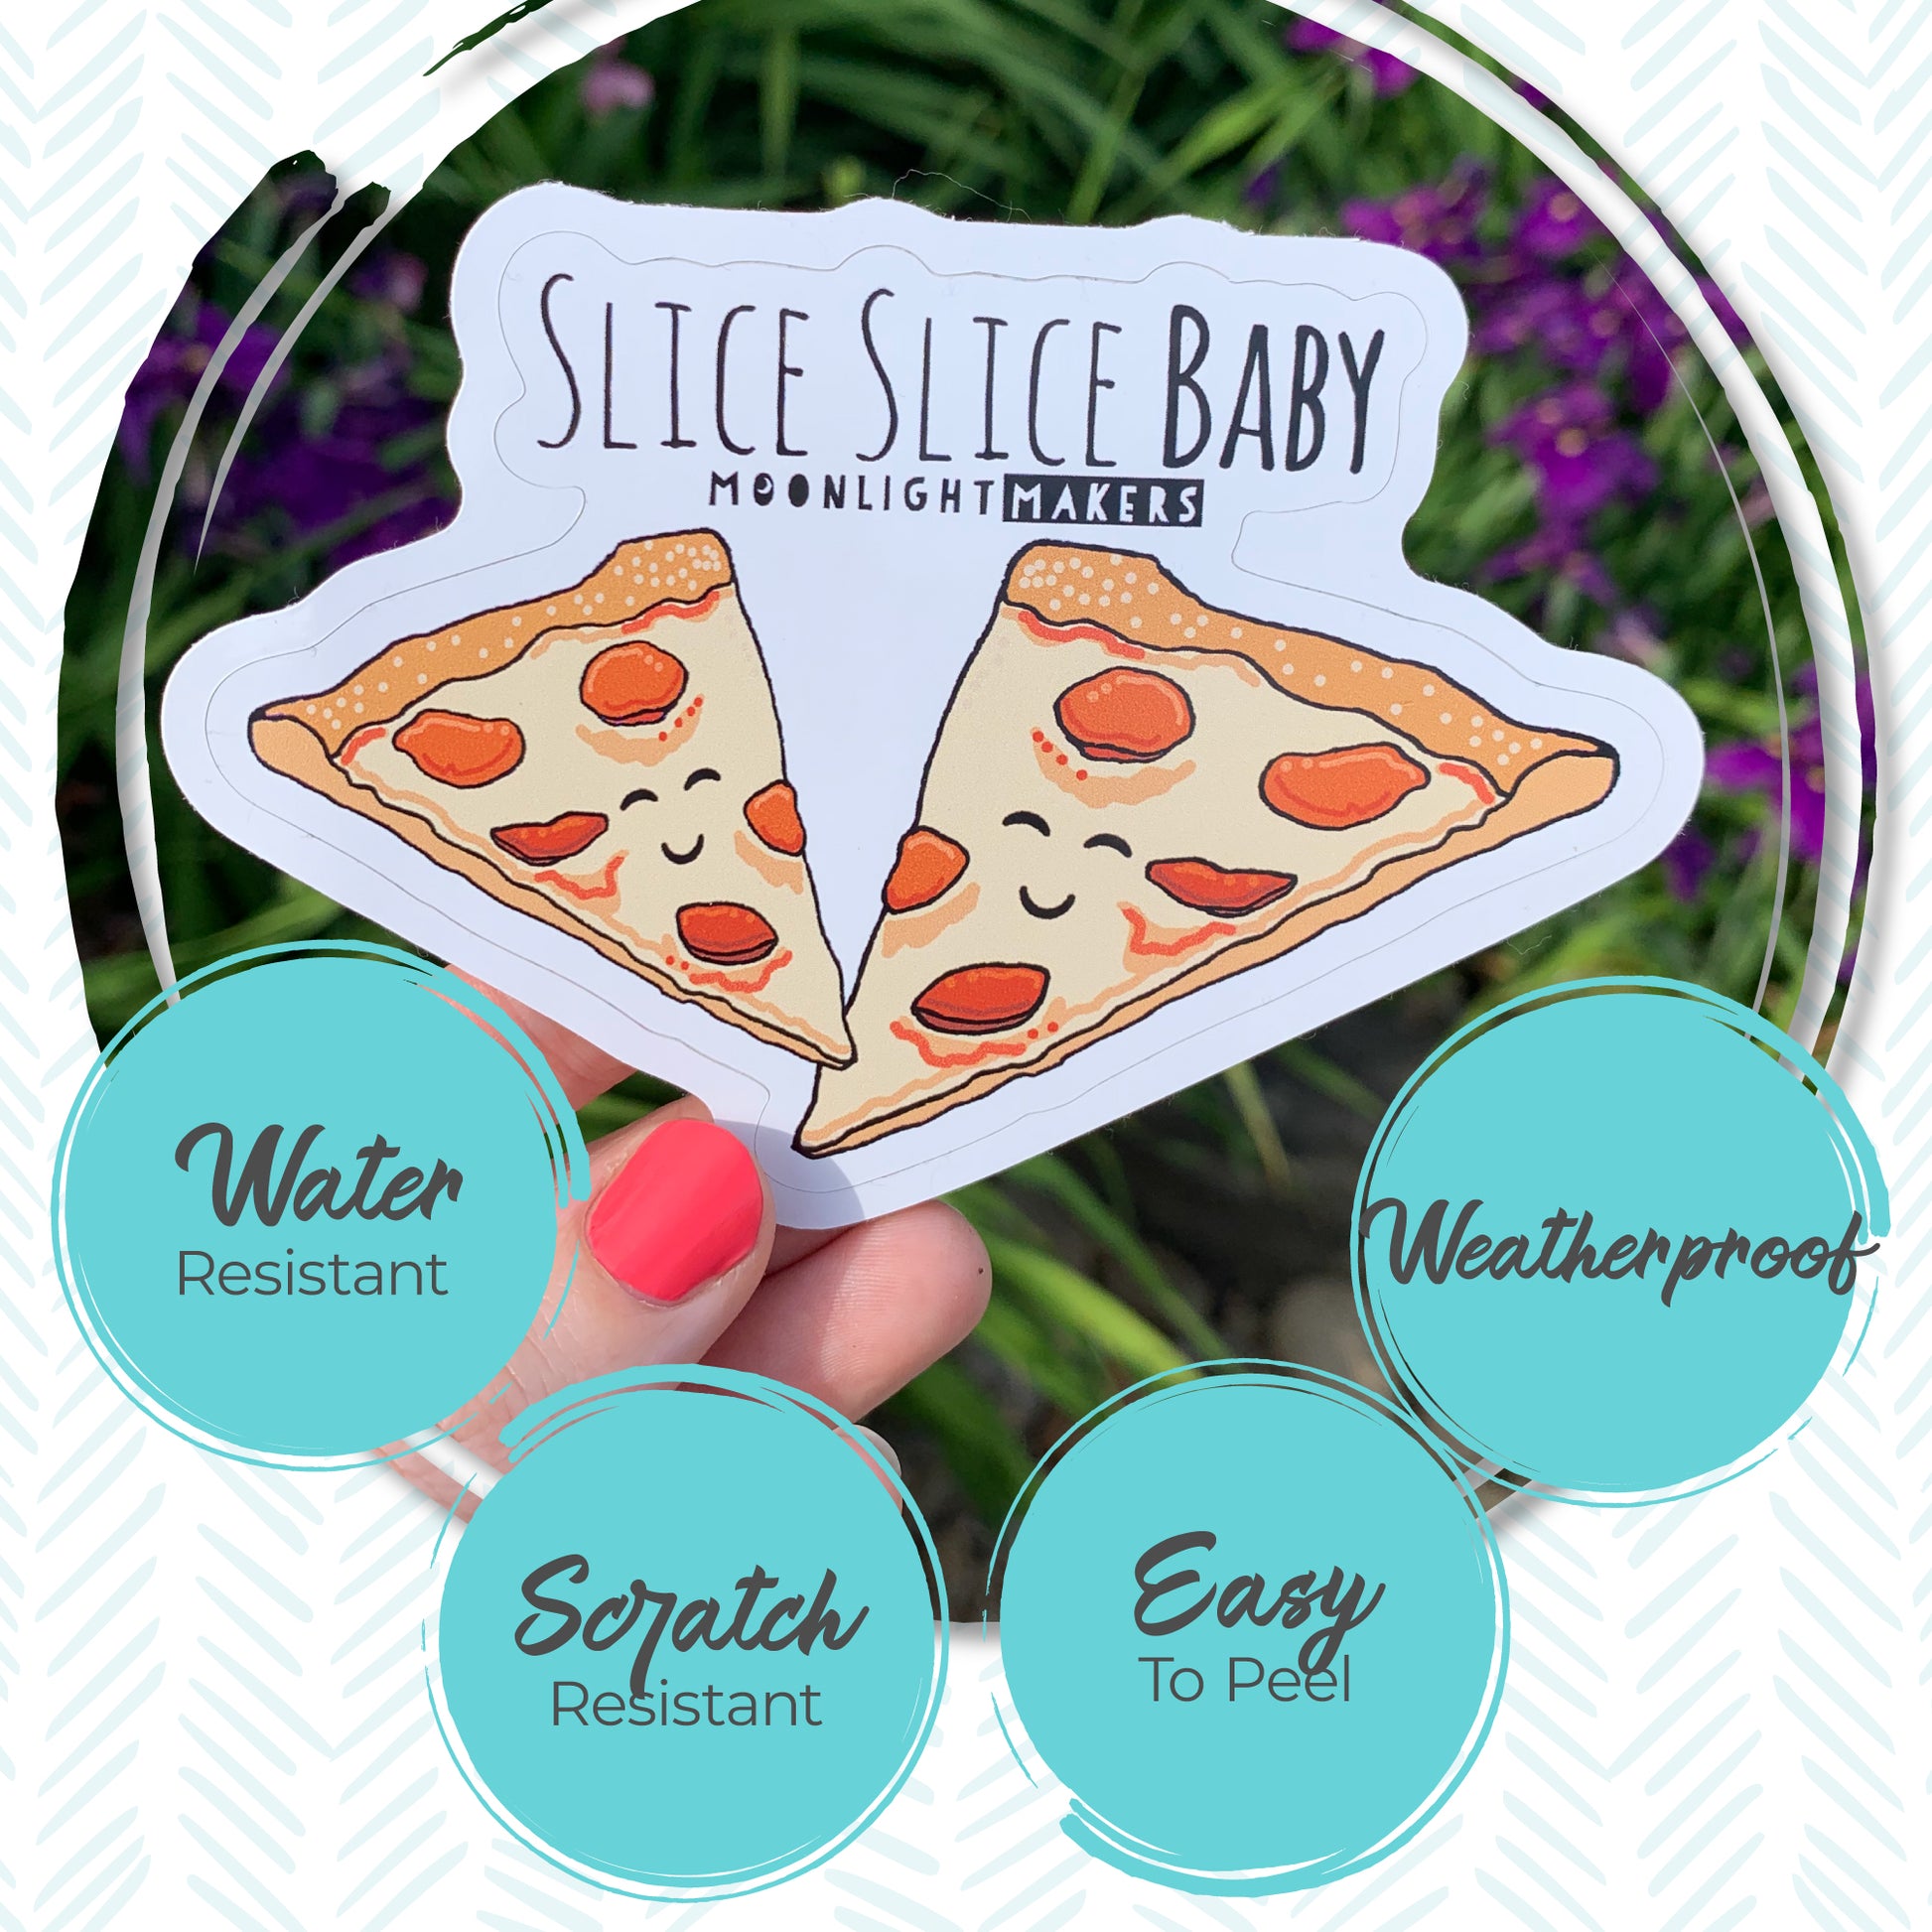 Slice Slice Baby - Die Cut Sticker - MoonlightMakers